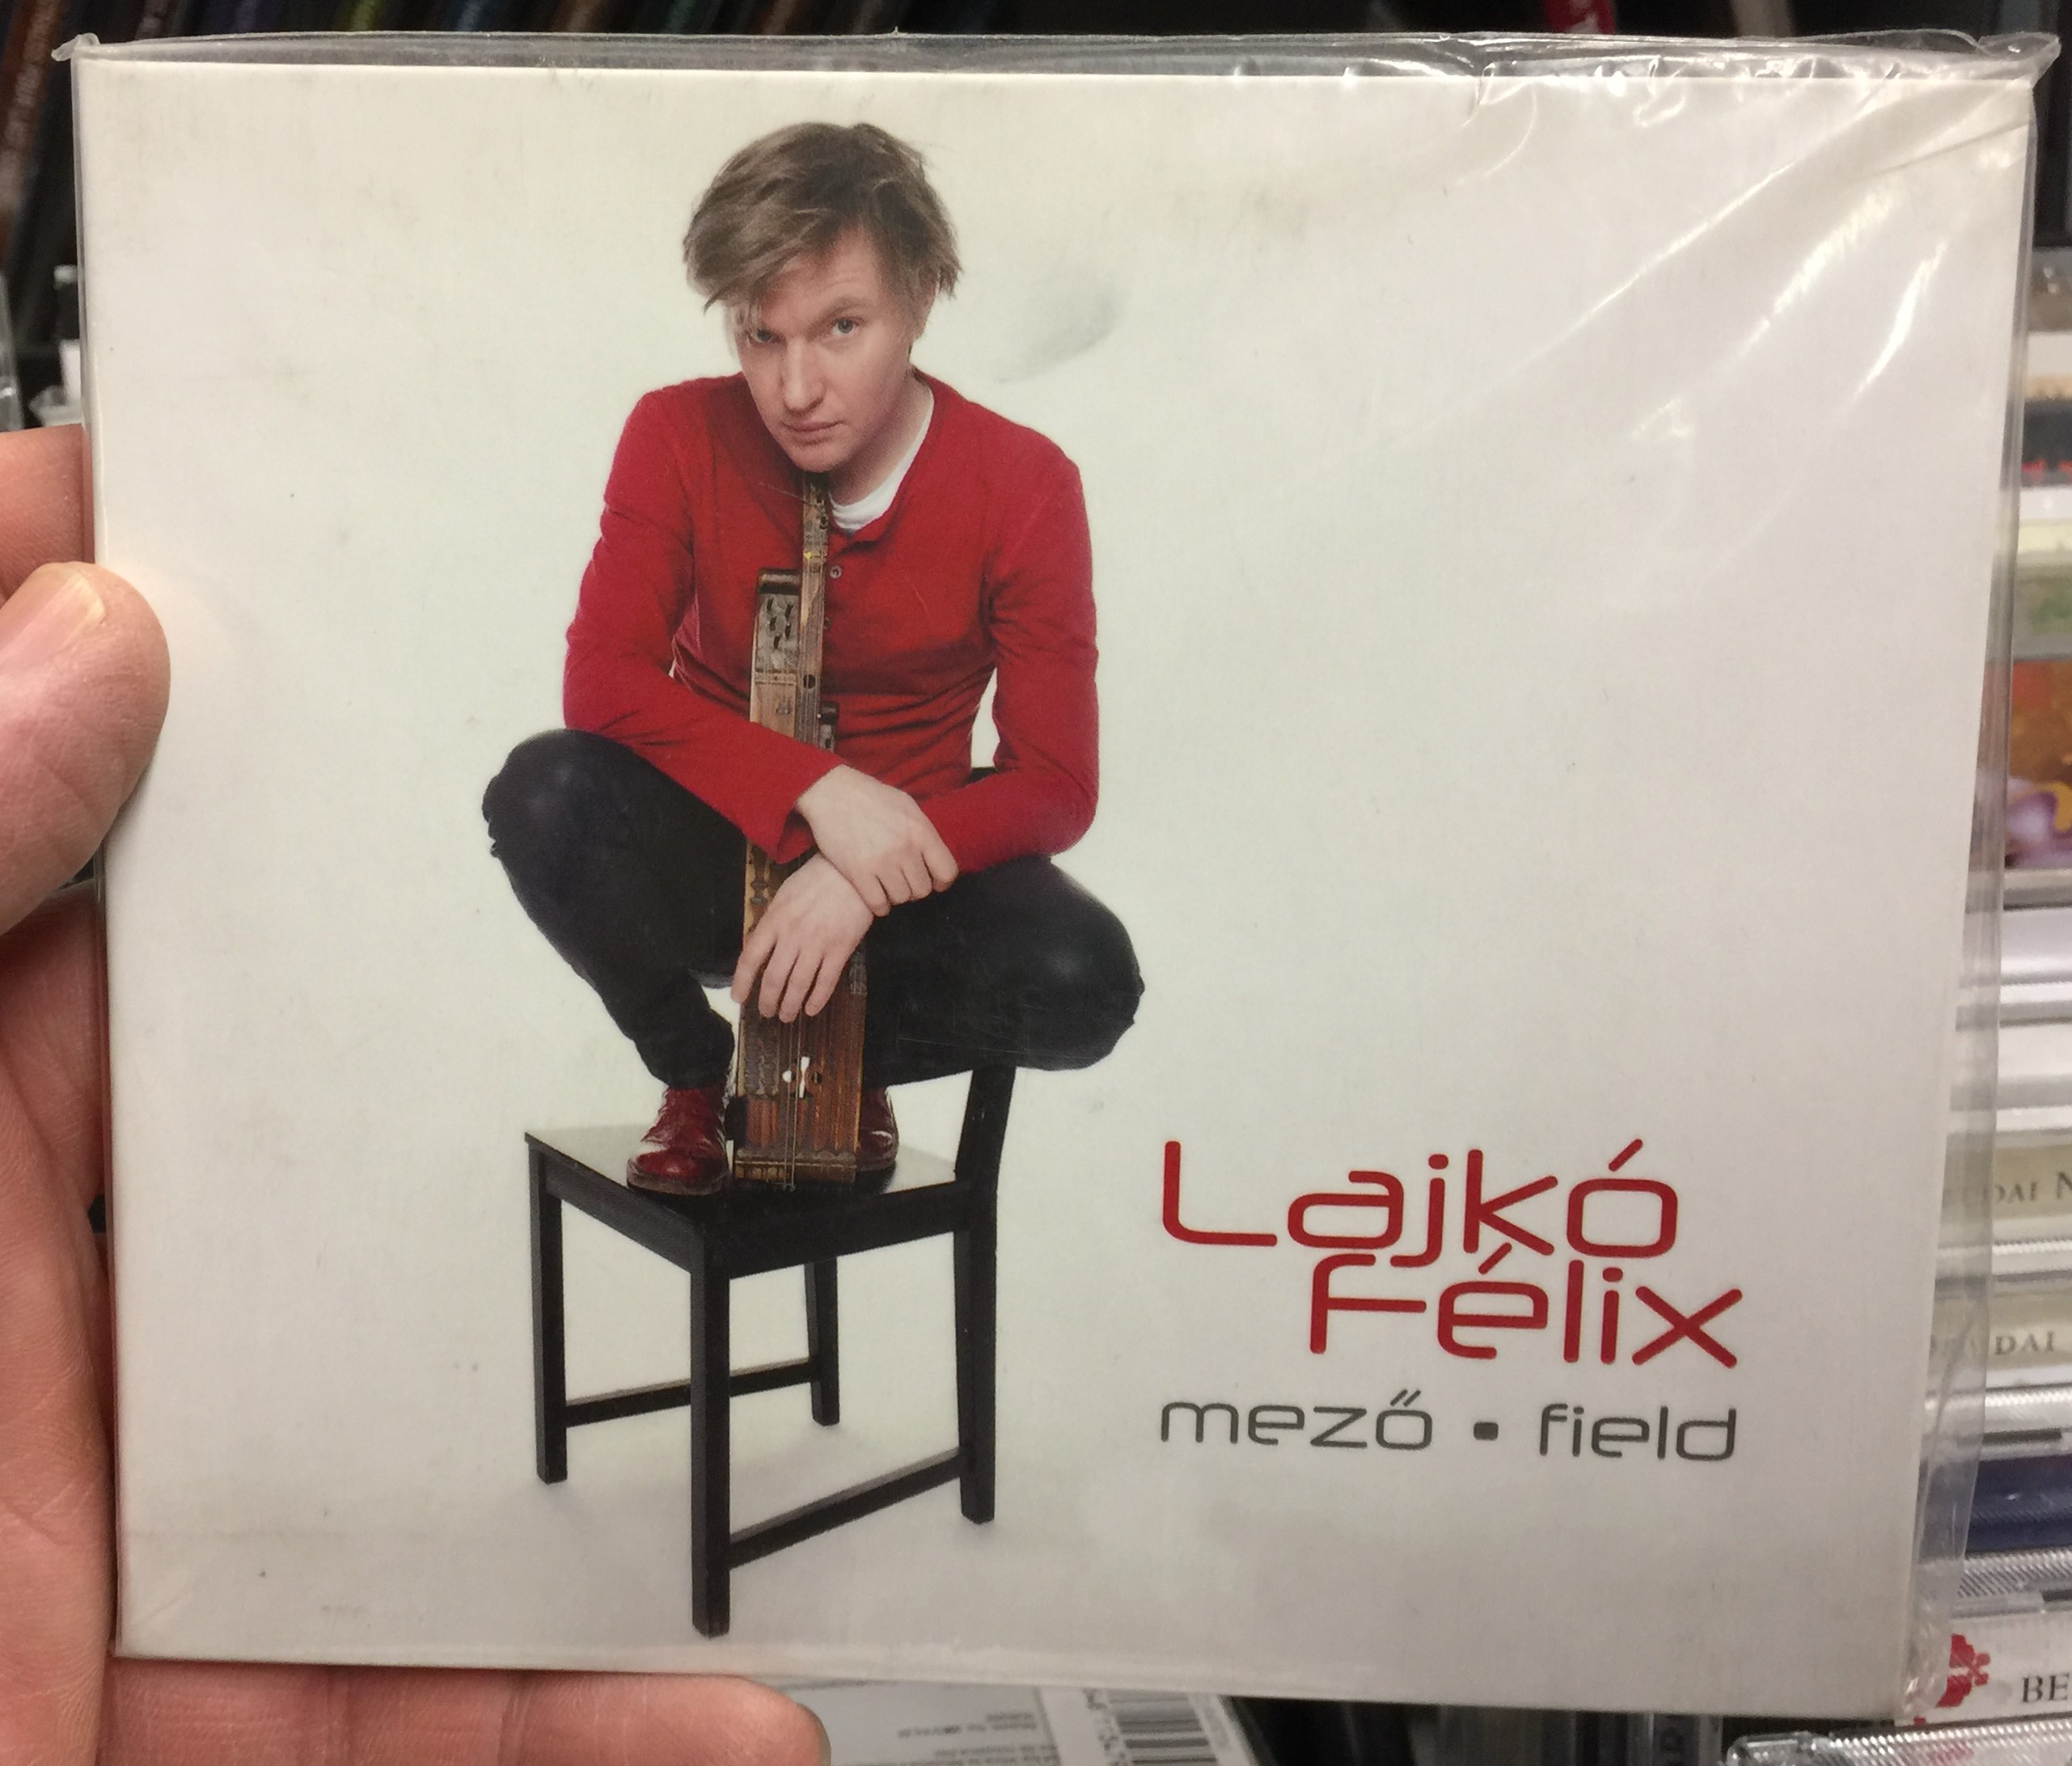 lajk-f-lix-mez-field-fon-records-audio-cd-2013-fa-283-2-1-.jpg